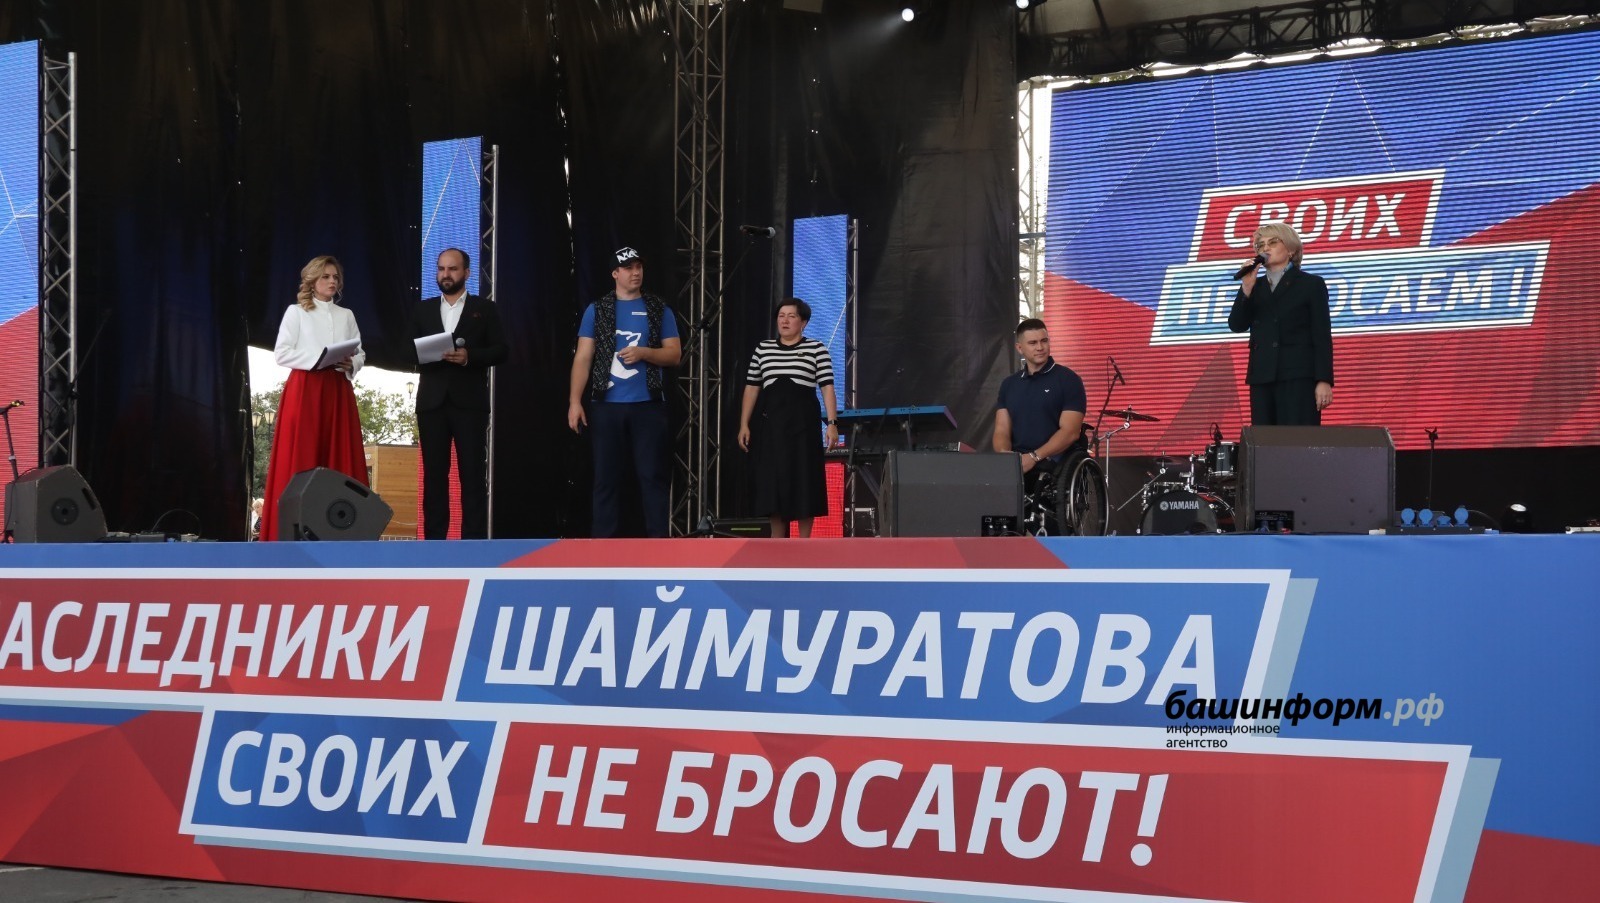 Митинг-концерт, названный в честь генерал-майора  Героя России Минигали Шаймуратова, собрал в столице Башкирии огромное количество участников